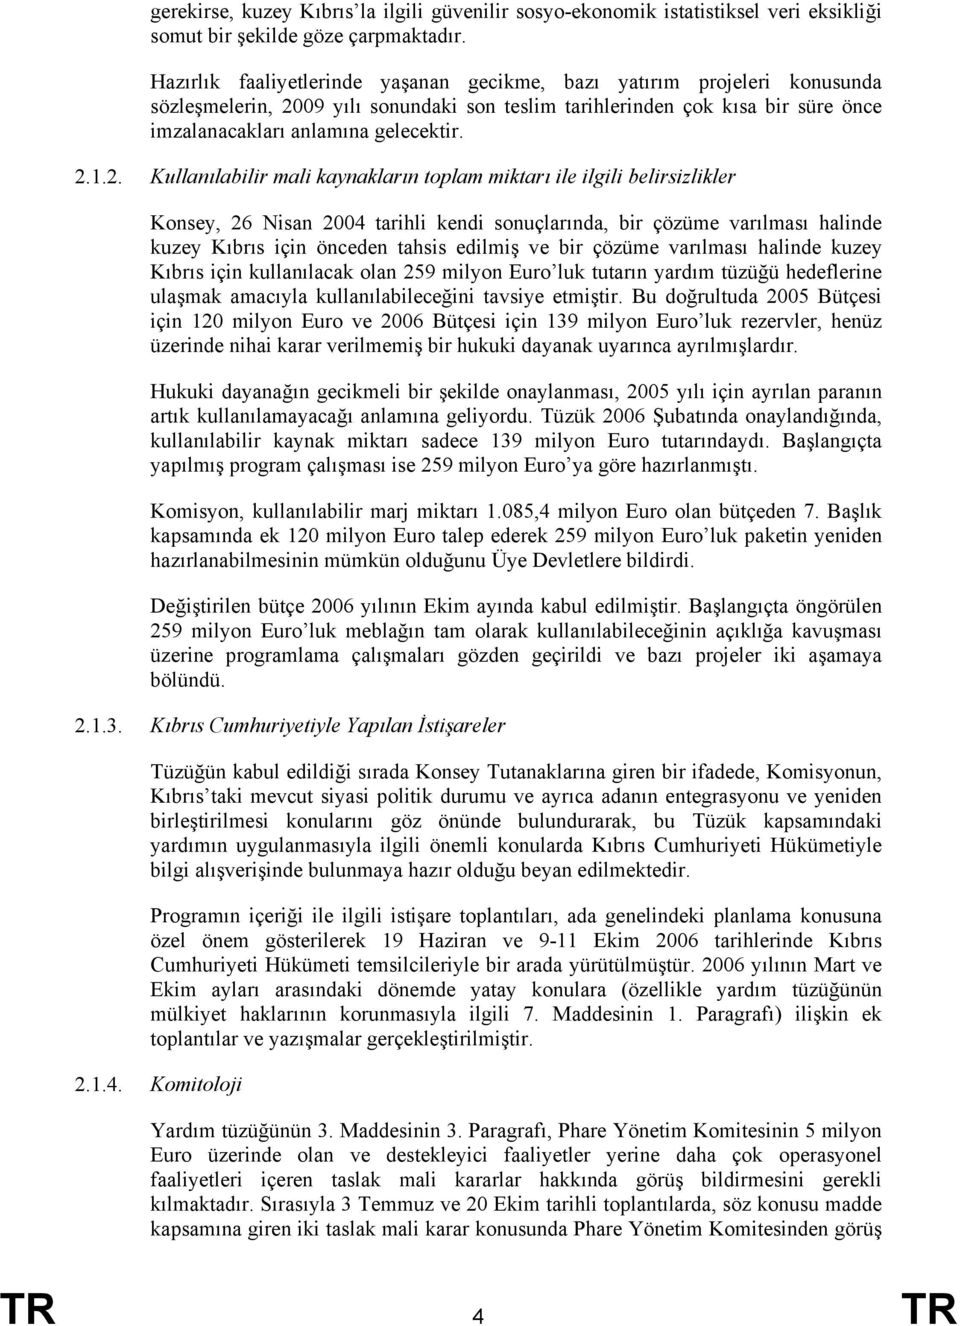 2. Kullanılabilir mali kaynakların toplam miktarı ile ilgili belirsizlikler Konsey, 26 Nisan 2004 tarihli kendi sonuçlarında, bir çözüme varılması halinde kuzey Kıbrıs için önceden tahsis edilmiş ve